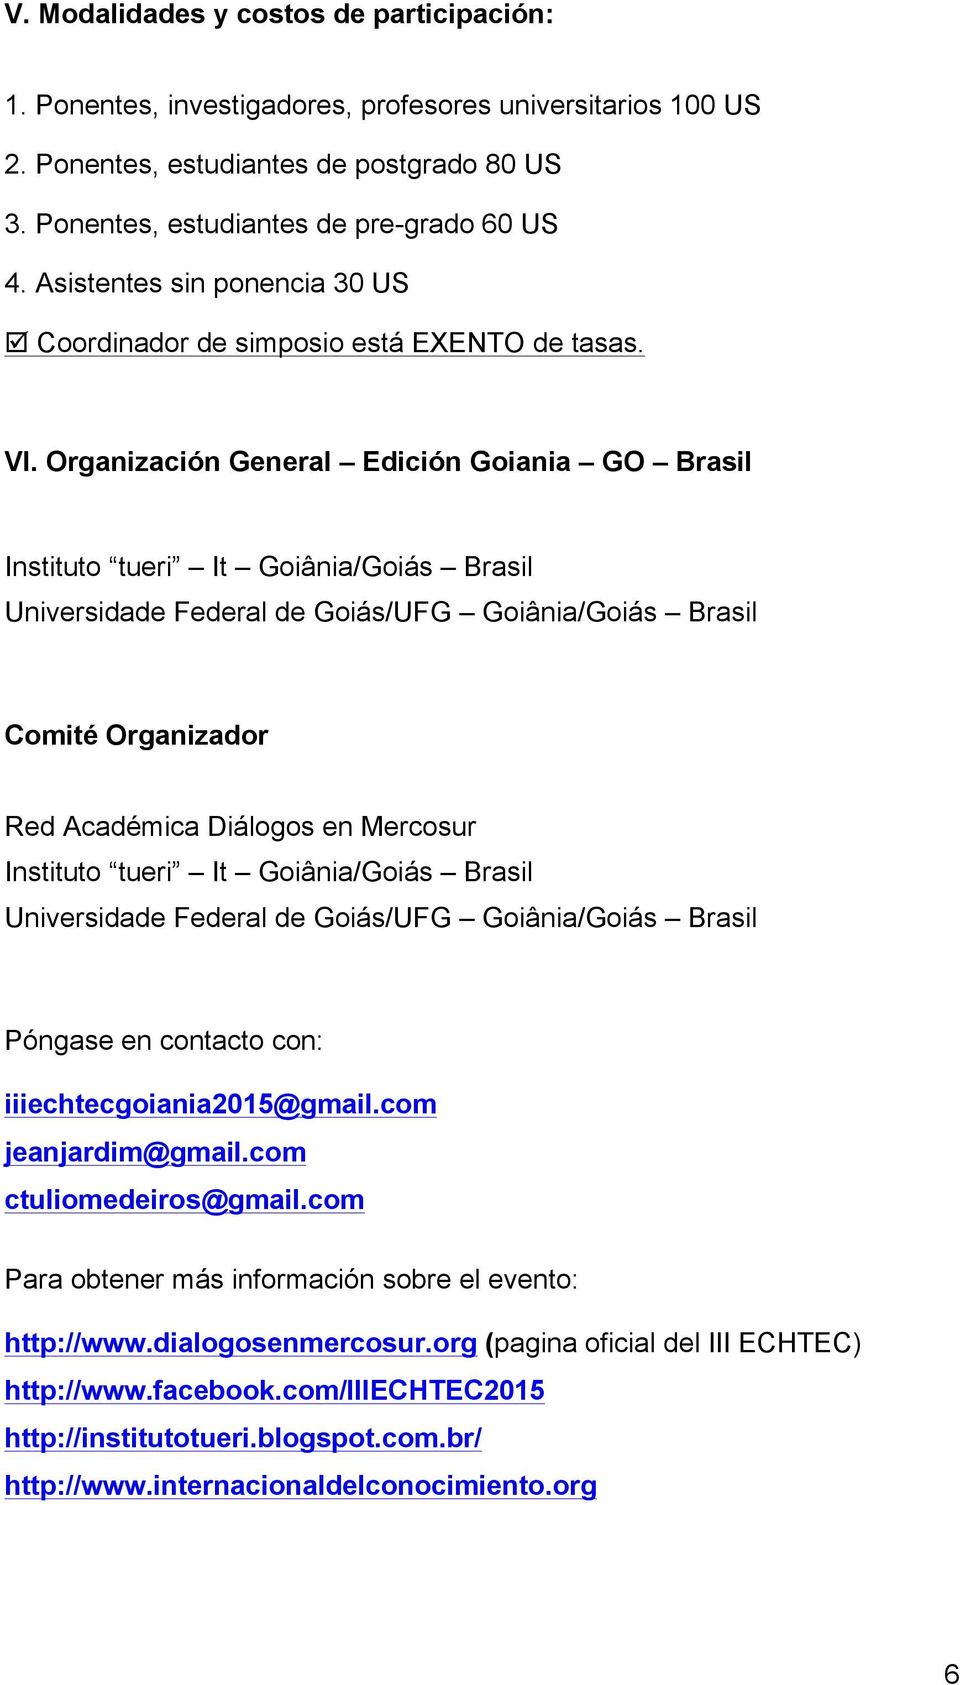 Organización General Edición Goiania GO Brasil Instituto tueri It Goiânia/Goiás Brasil Universidade Federal de Goiás/UFG Goiânia/Goiás Brasil Comité Organizador Red Académica Diálogos en Mercosur